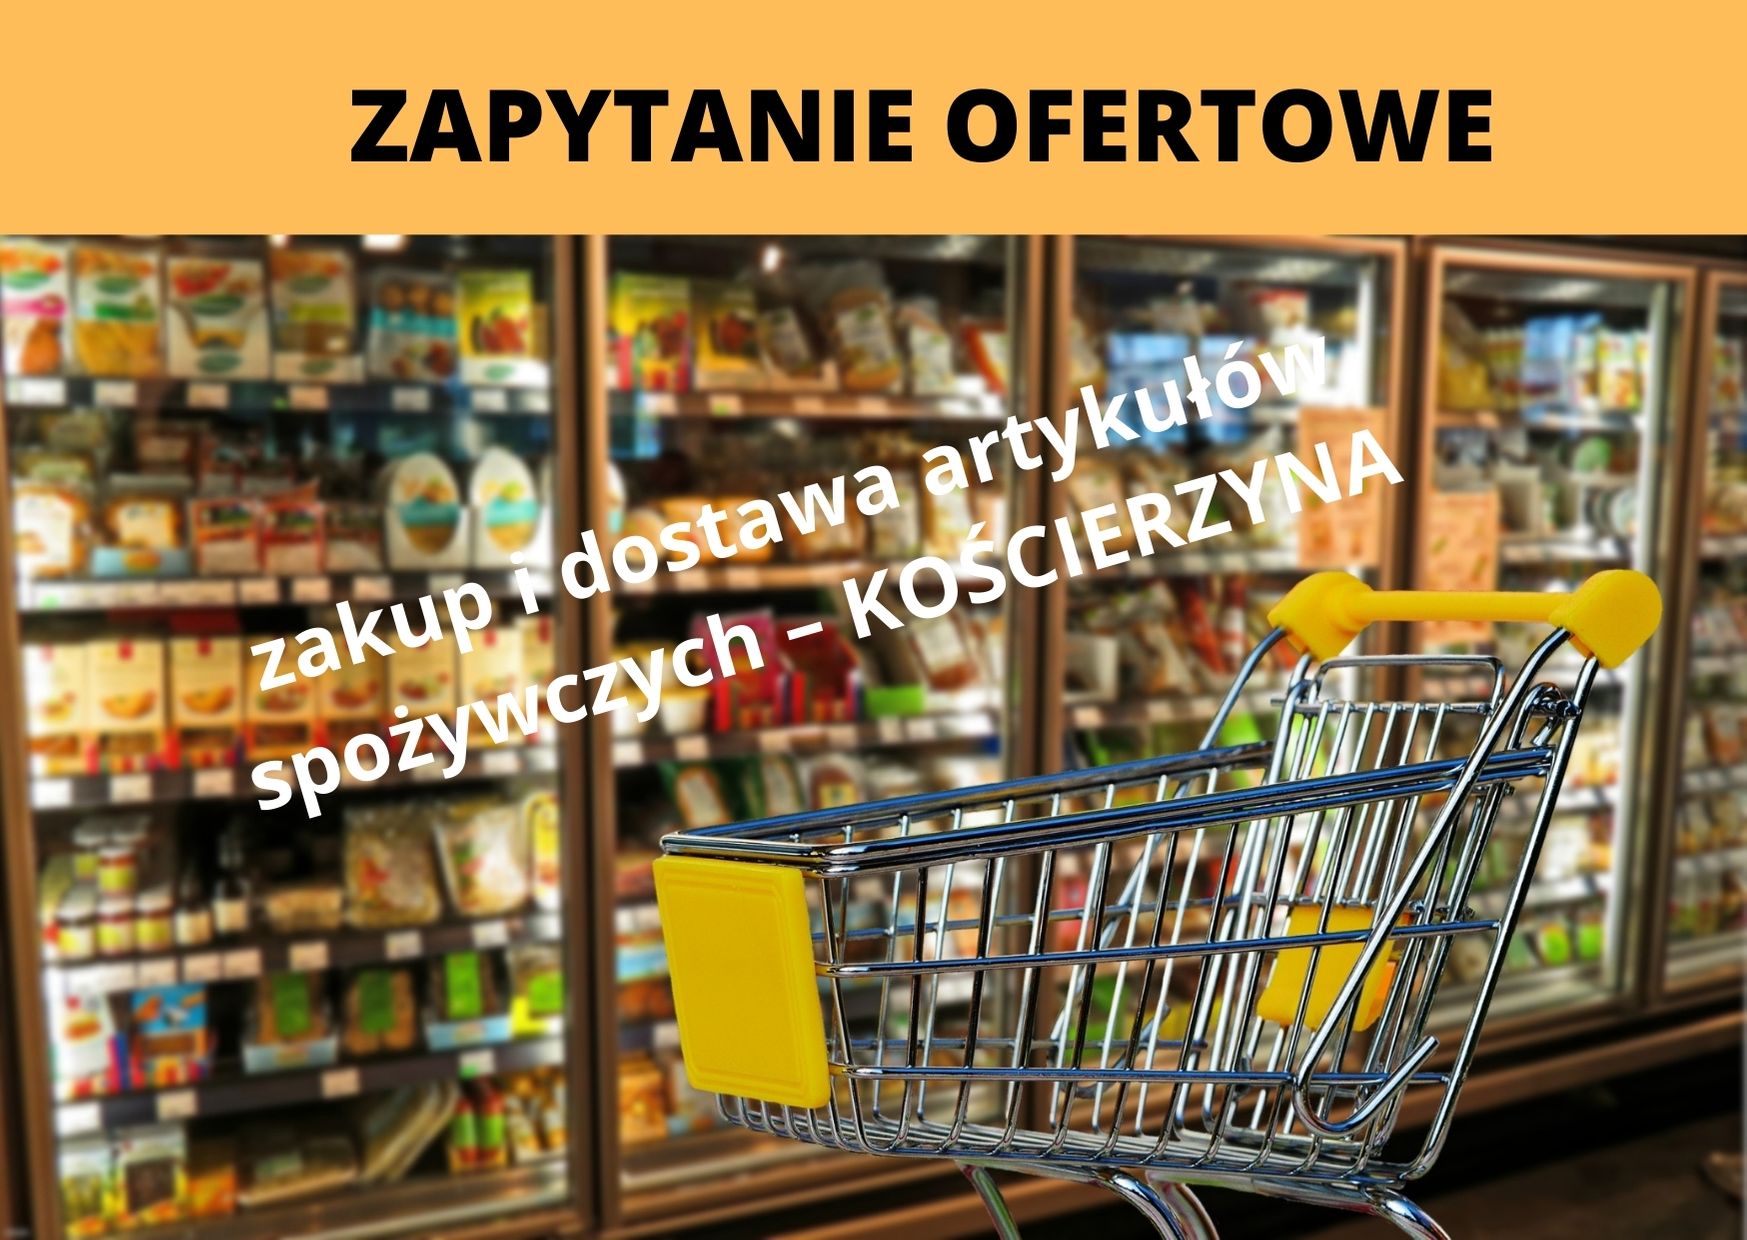 ZAPYTANIE OFERTOWE 08/0092/2021 – zakup i dostawa artykułów spożywczych – Kościerzyna, RPPM.06.02.02-22-0092/20